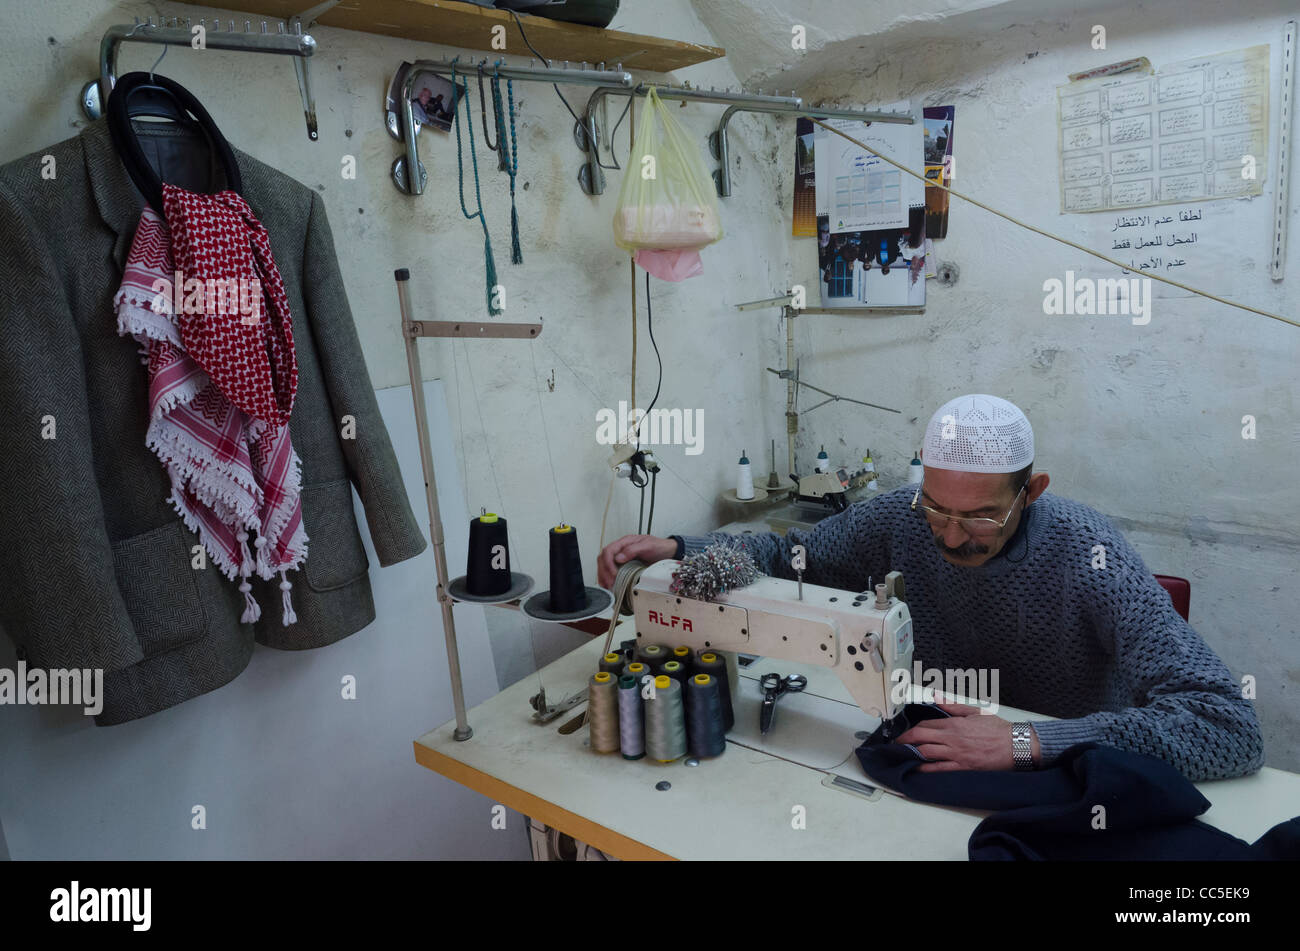 Taylor palestinienne dans son atelier. musilim trimestre. Vieille ville de Jérusalem Israël. Banque D'Images